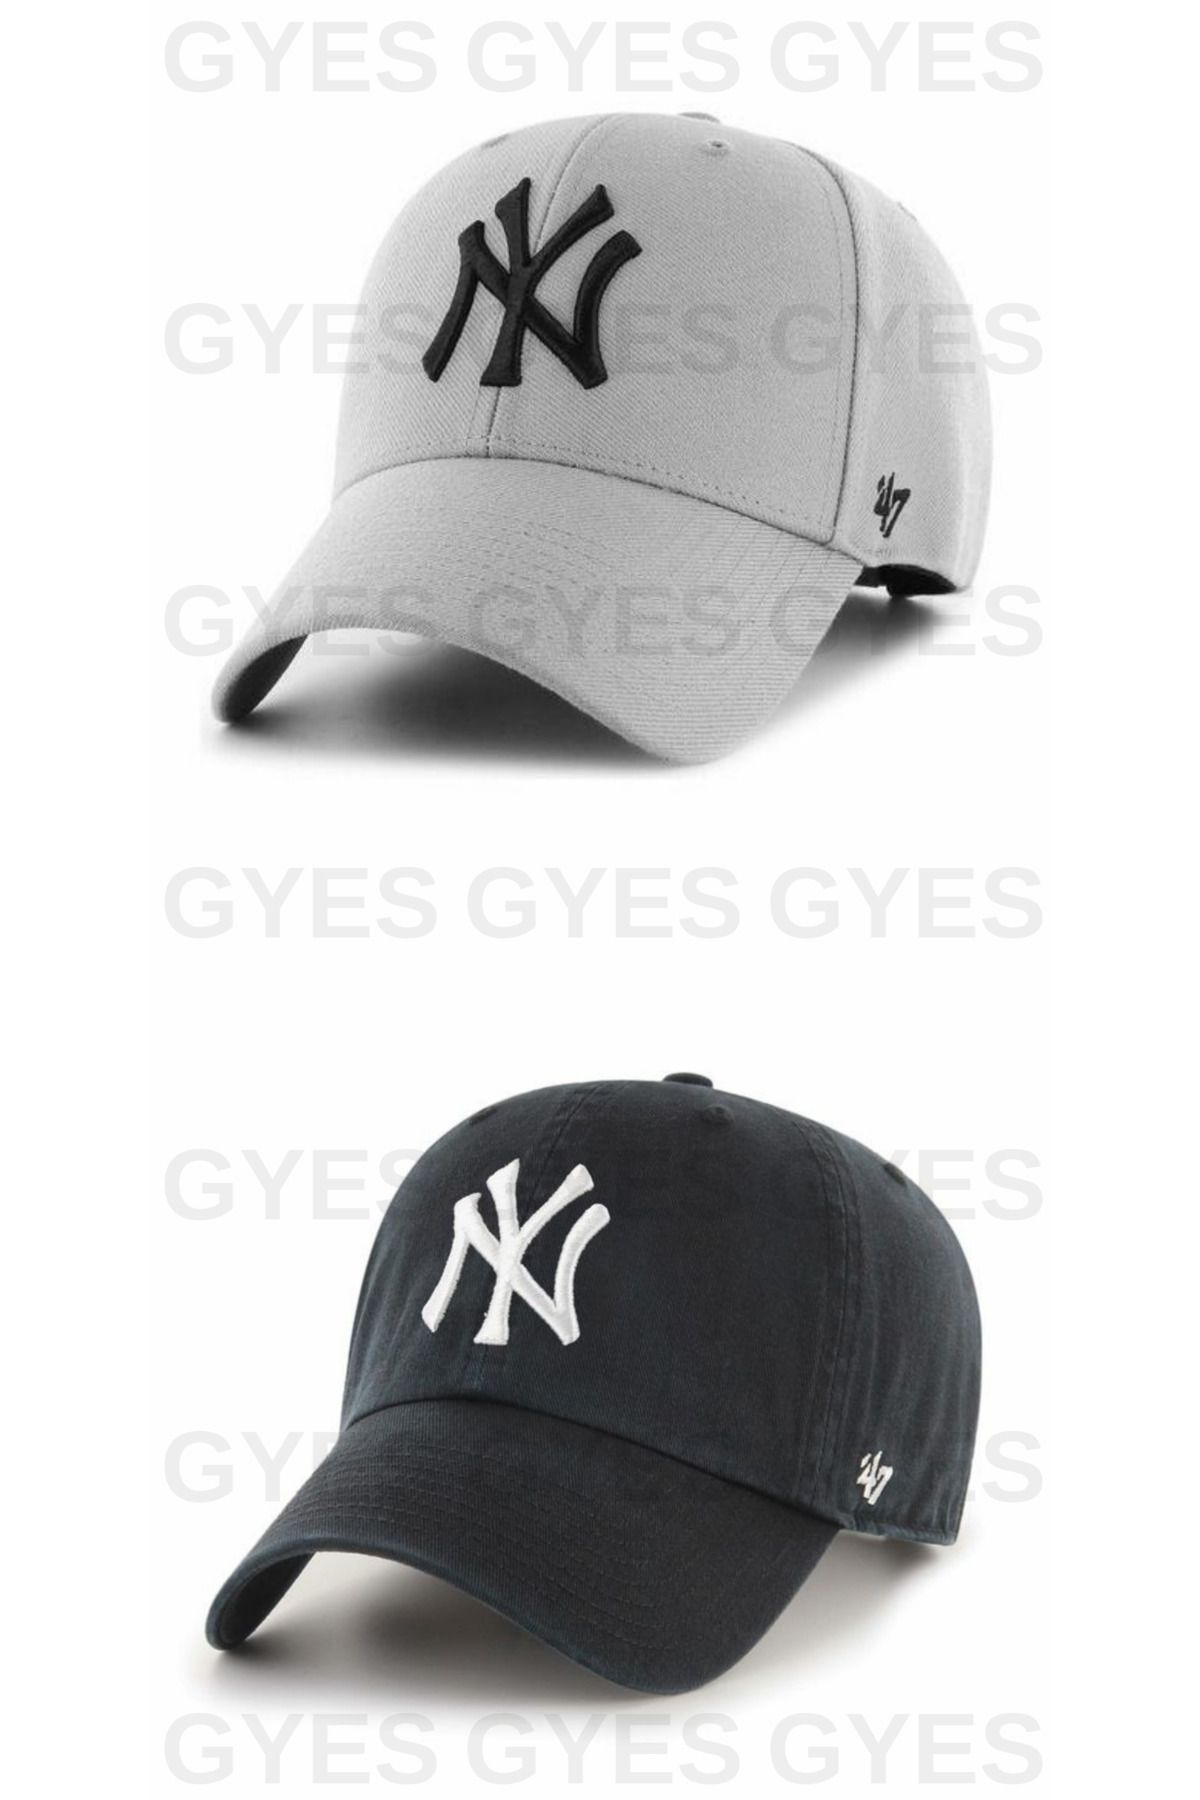 GYES Spor Ny Şapka Unisex 2'li Takım Arkası Cırtlı Ayarlanabilir